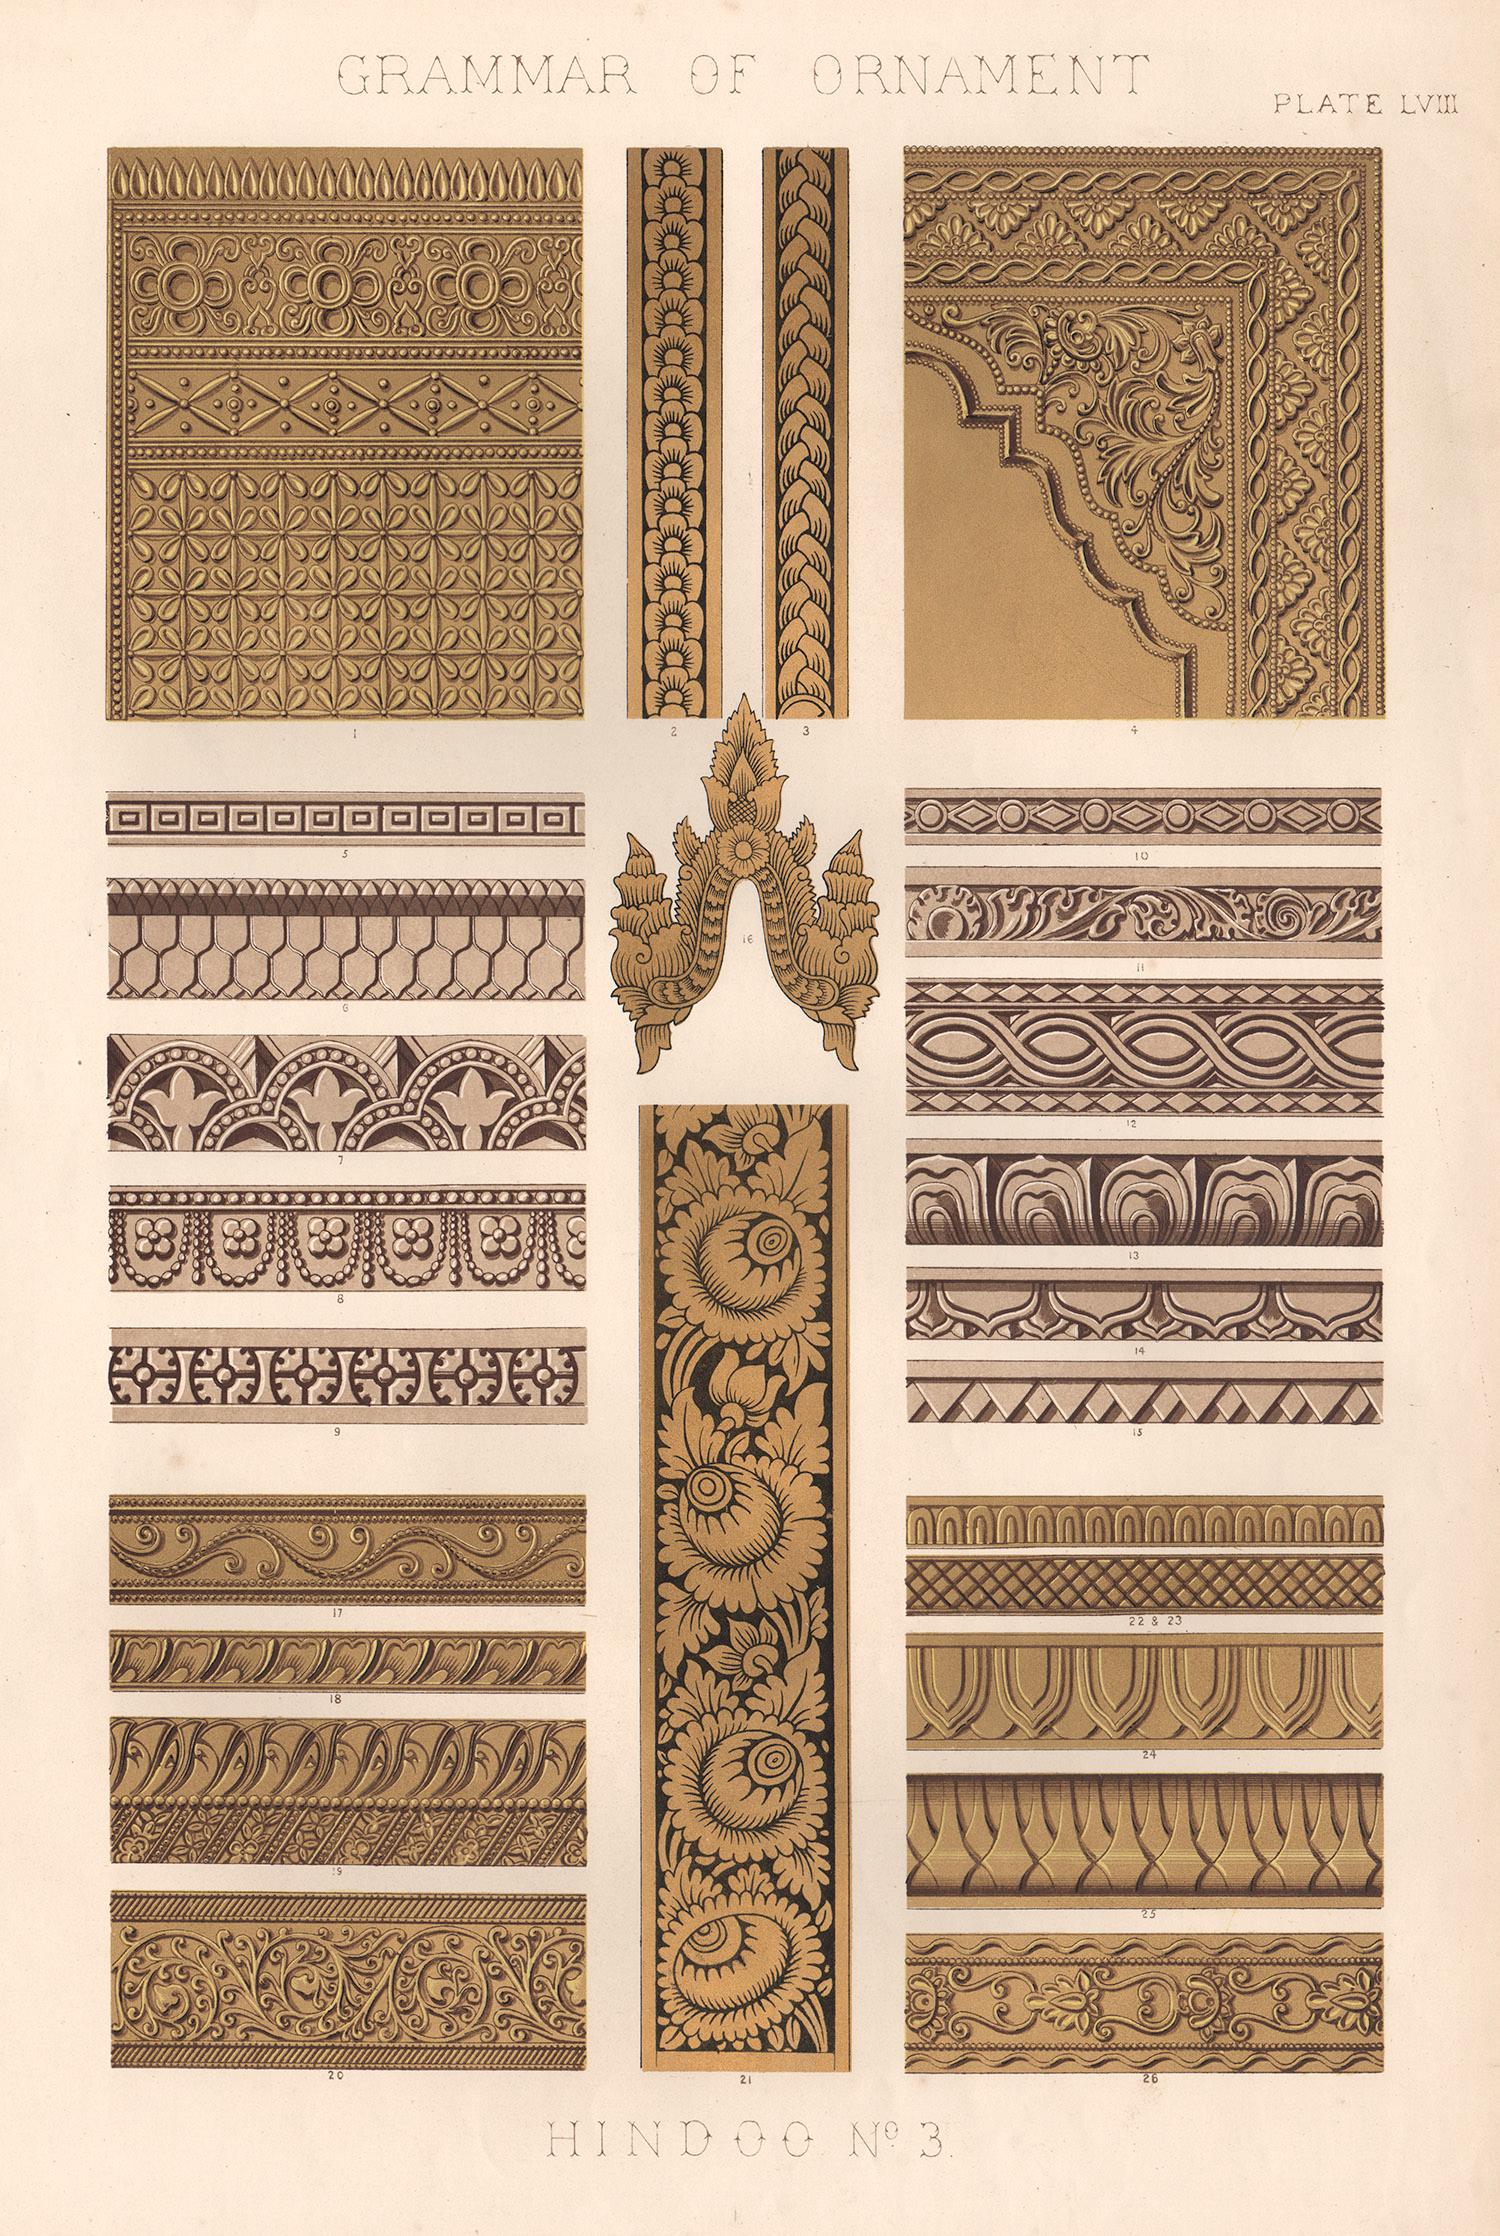 Chromolithographie, 1868.

Aus Owen Jones' "Grammatik des Ornaments", 1868. Der Waliser Owen Jones veröffentlichte sein Monument des Designs, die Grammatik des Ornaments, zunächst in Teilabschnitten für Abonnenten. Für seine üppig illustrierten